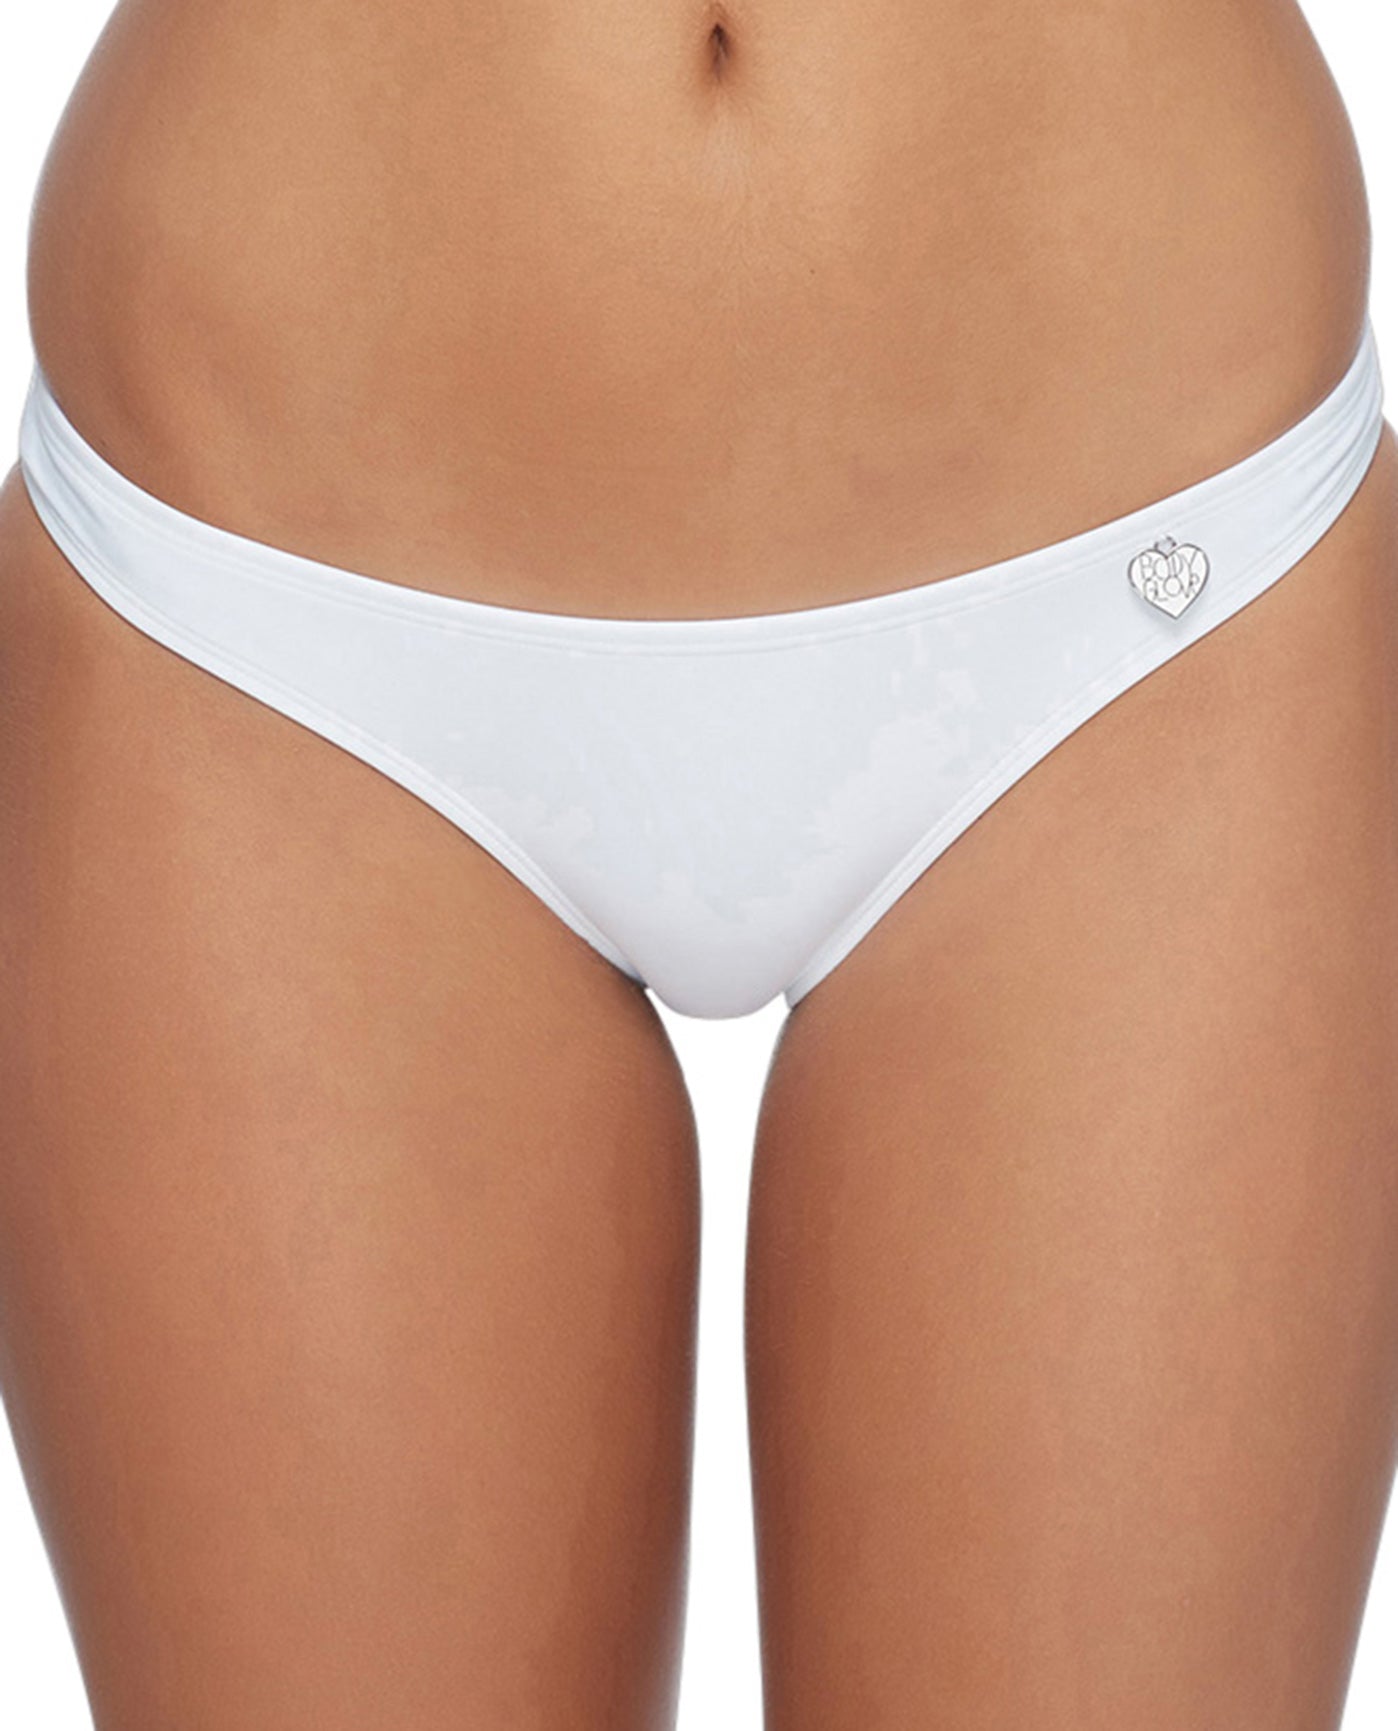 Front View Of Body Glove Smoothies Full Coverage Bikini Bottom | BDG Smoothies White